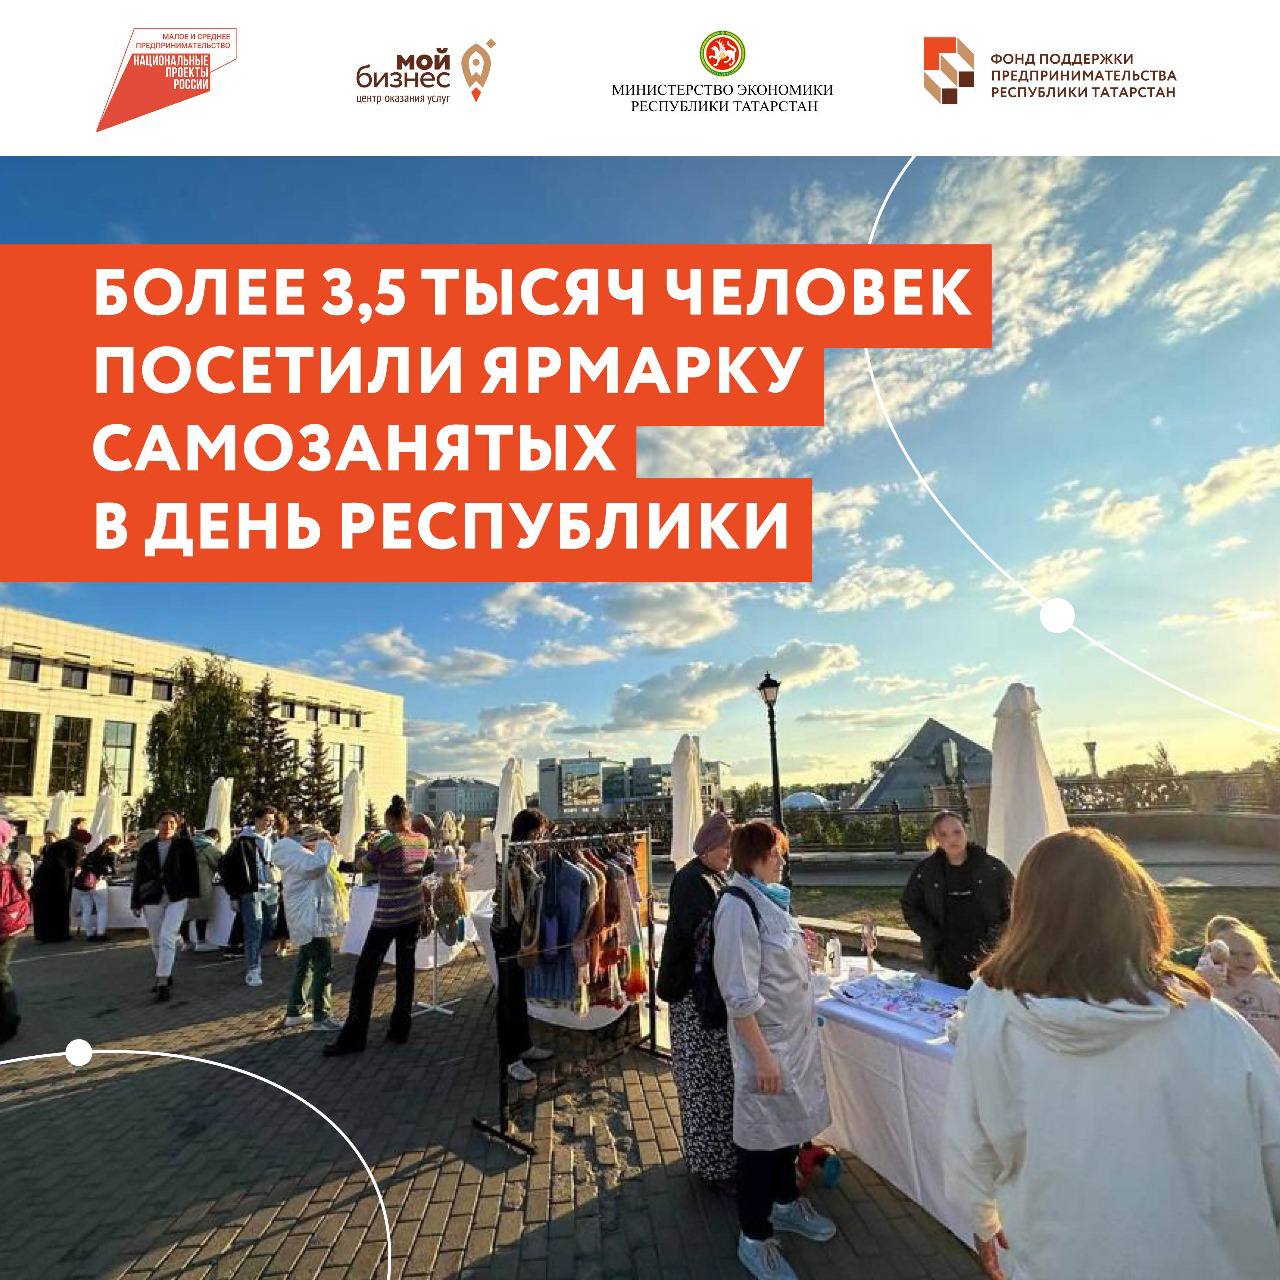 Татарстанские самозанятые заработали полмиллиона рублей на ярмарке в День Республики. Гостями мероприятия стали свыше 3,5 тысяч человек. 